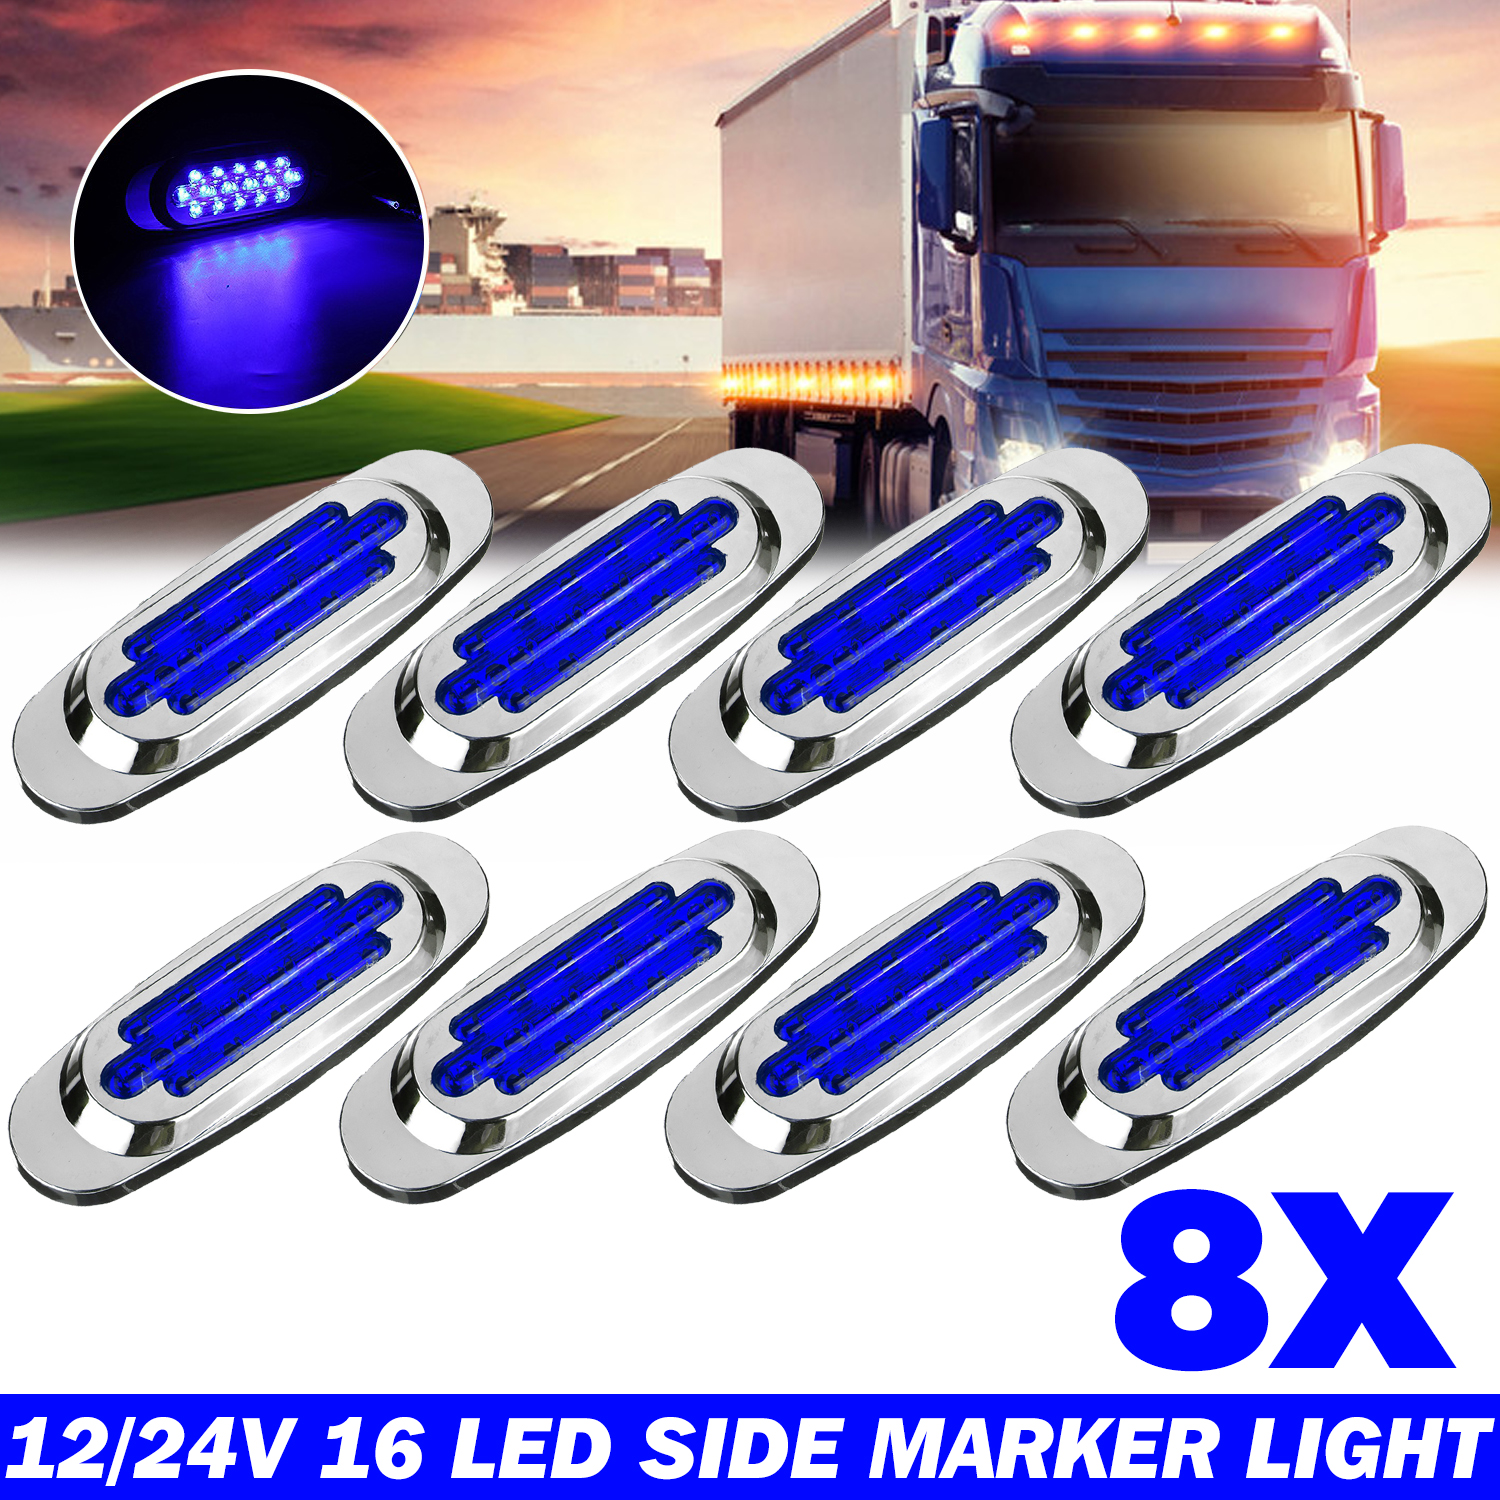 100pcs 12v 24v Red Amber Blue White Led Side Marker Lights Truck